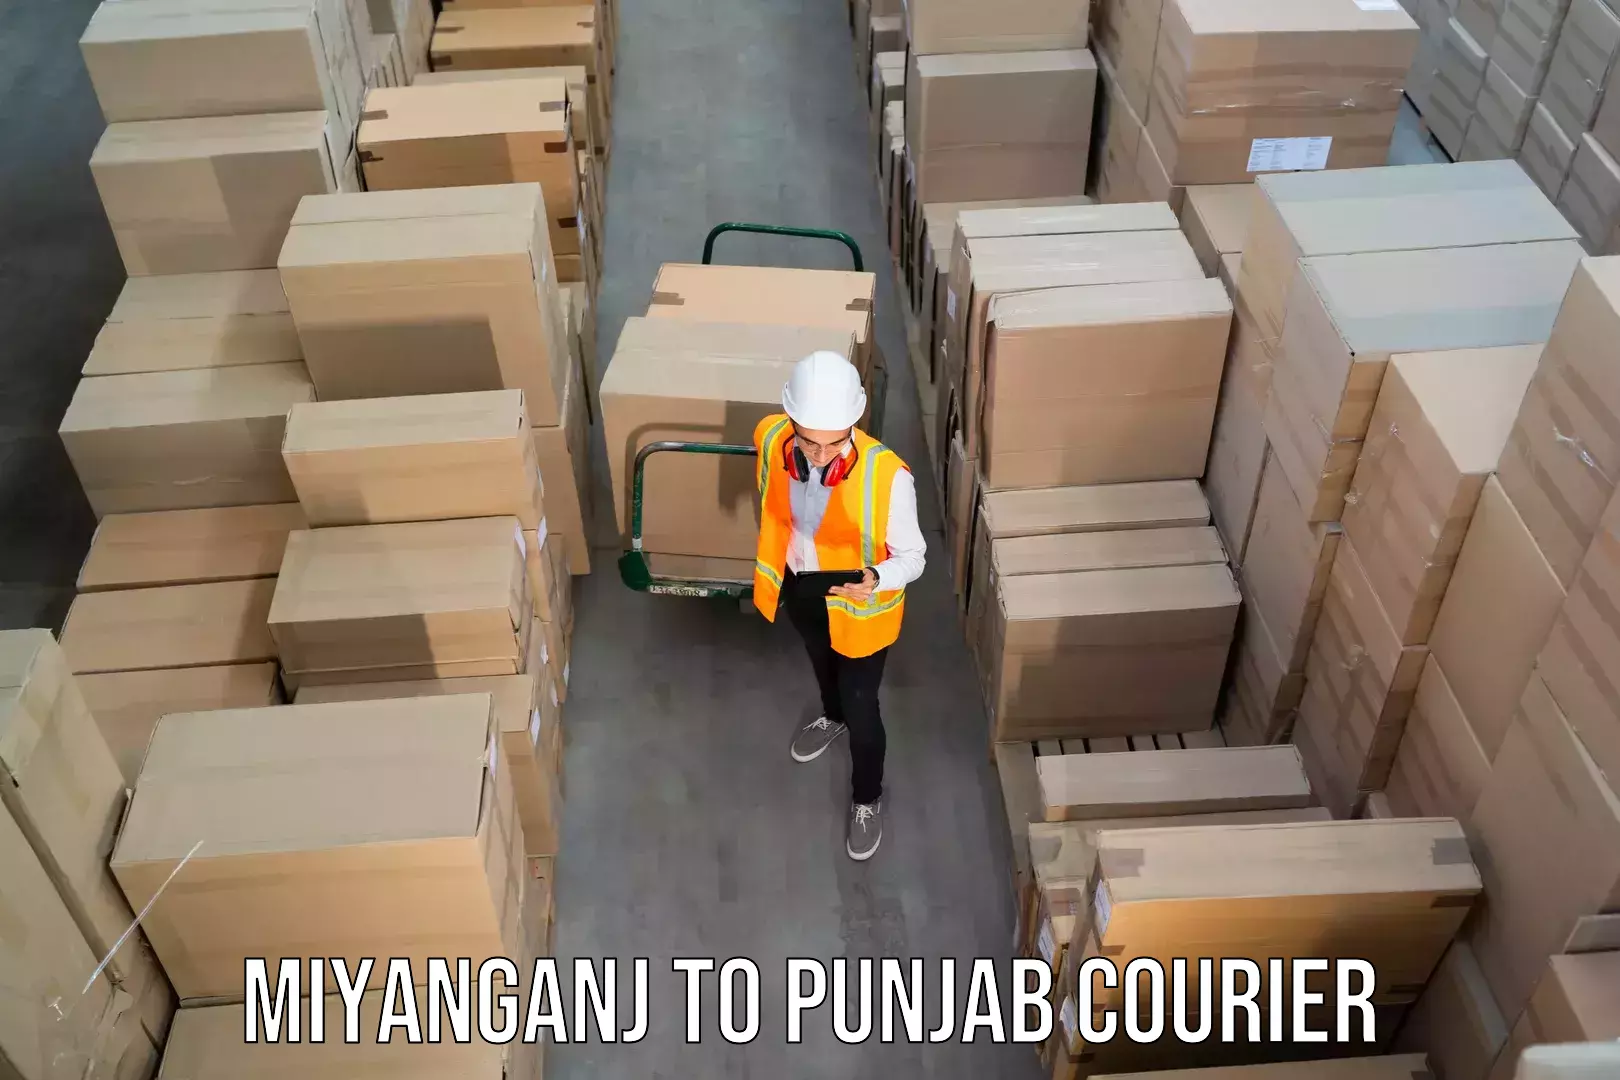 Express mail solutions Miyanganj to Punjab